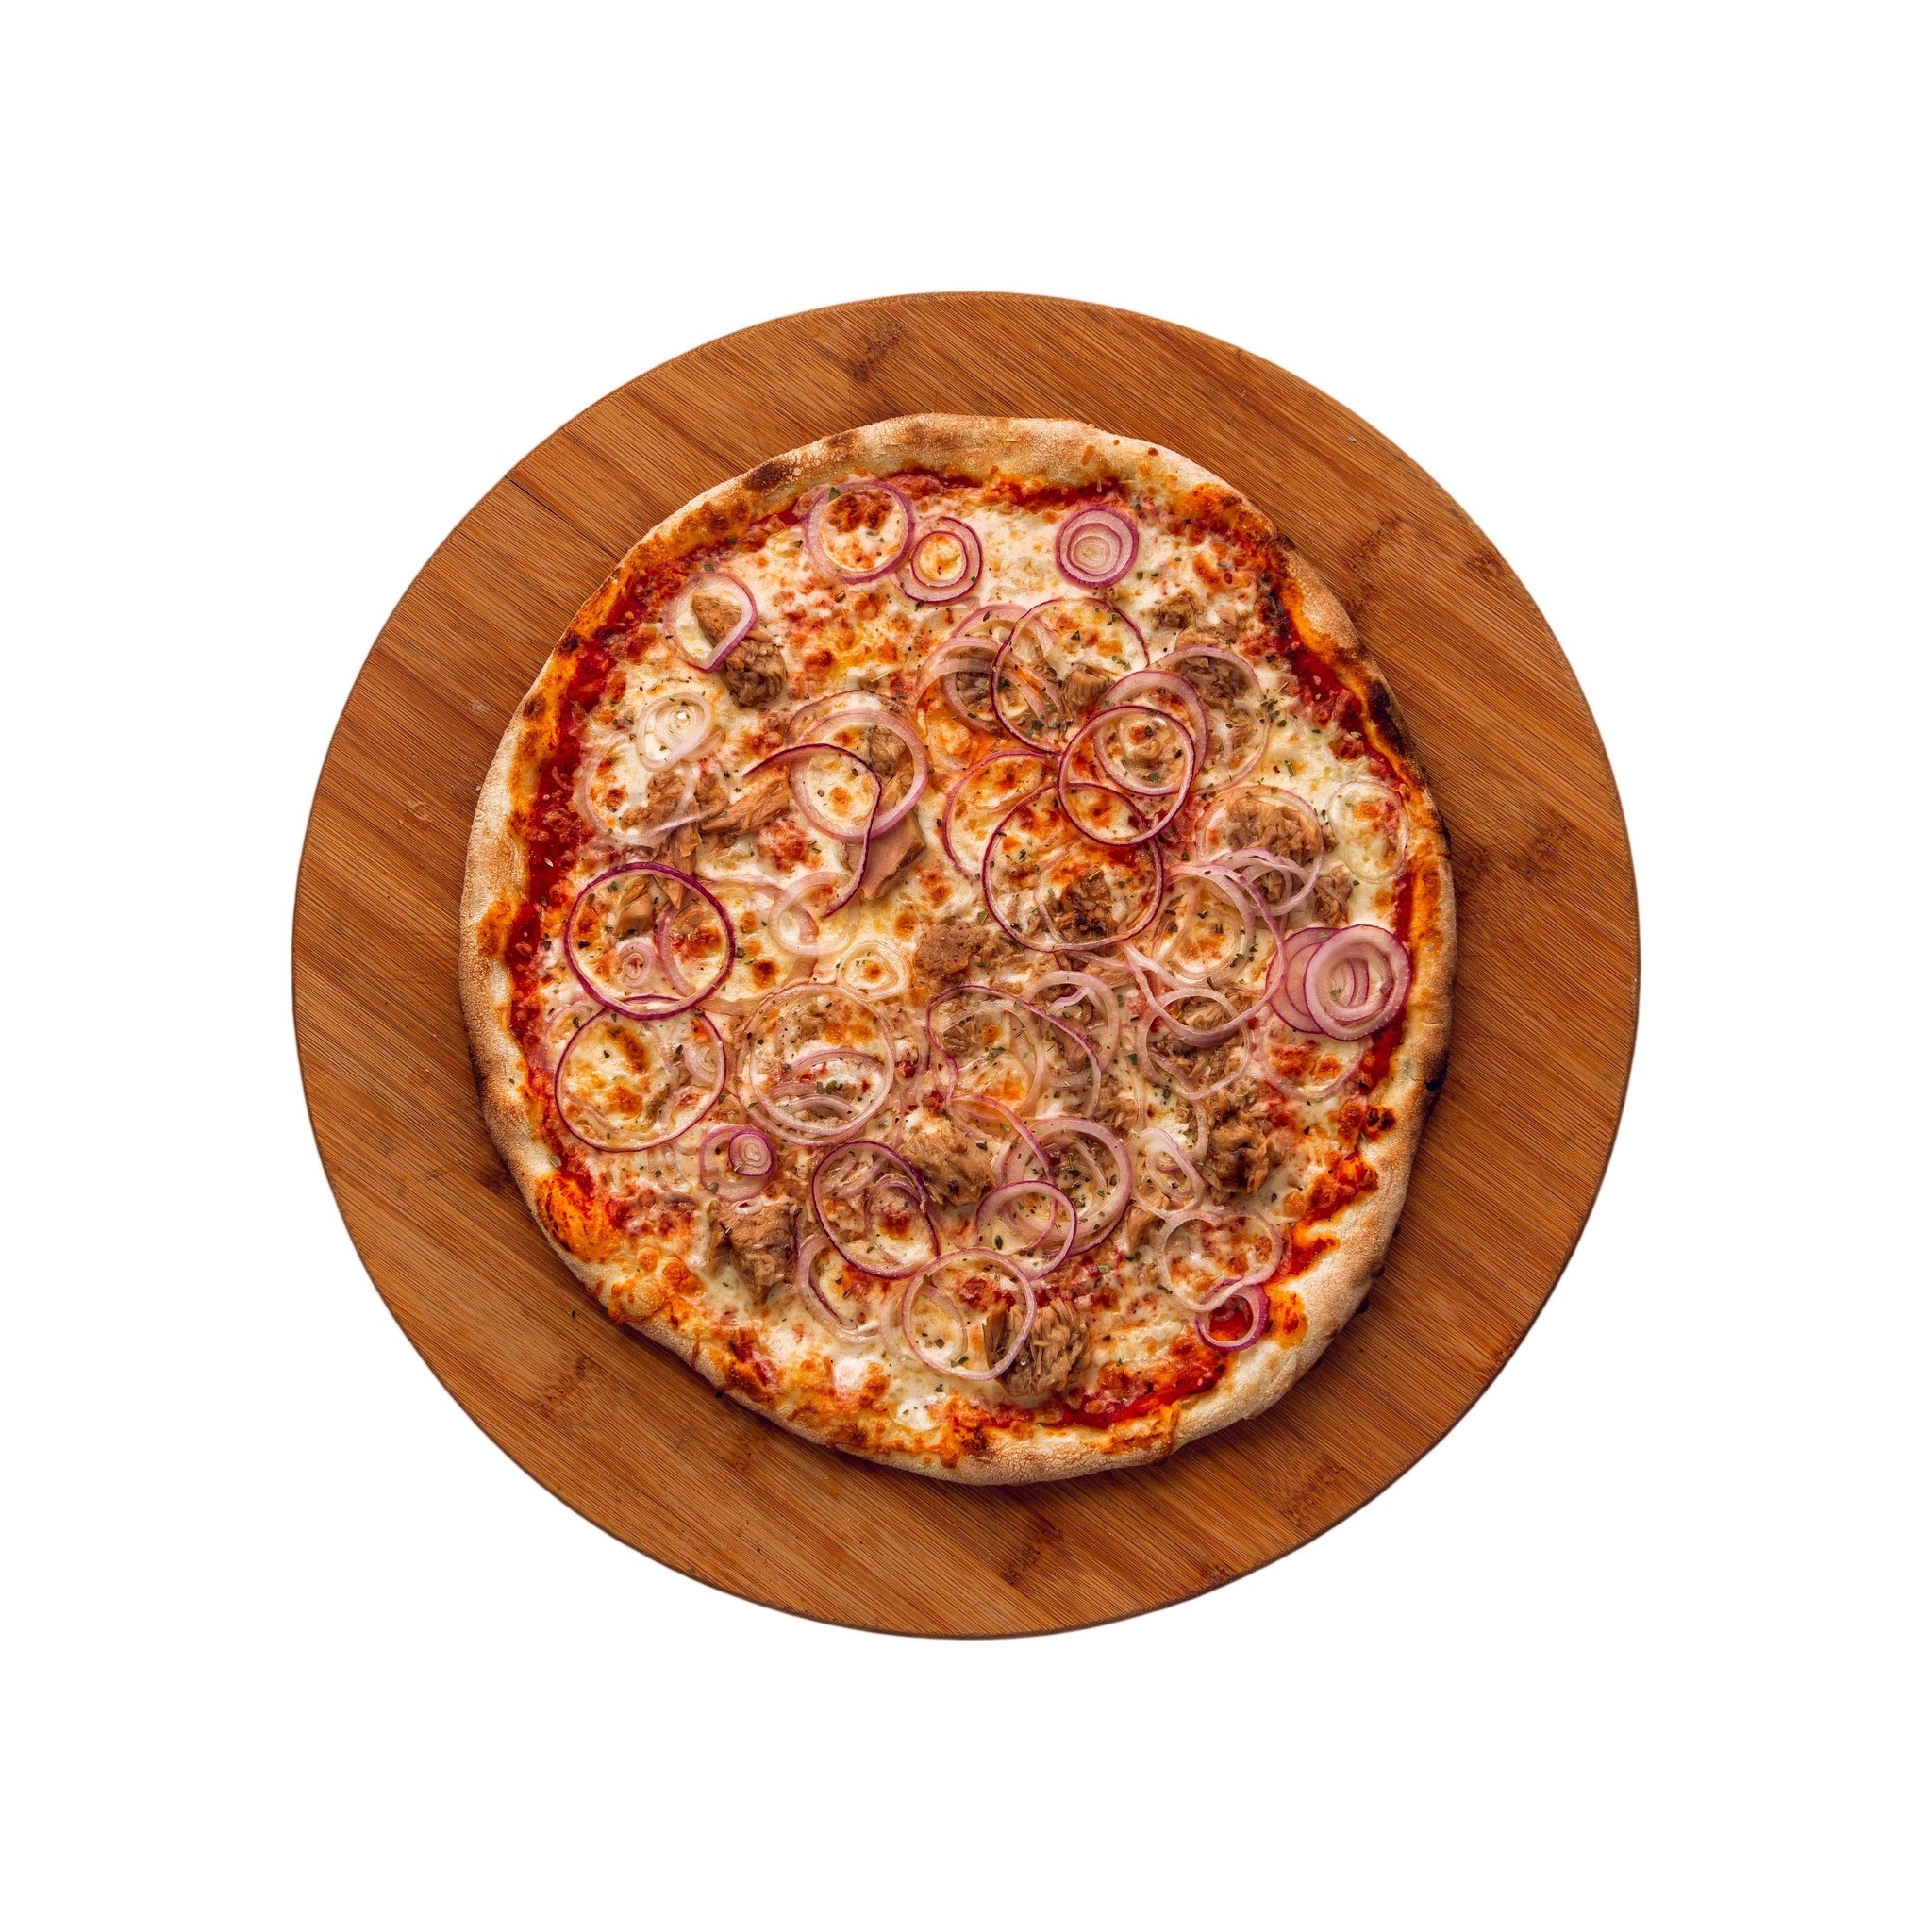 лучшая пицца с доставкой в красноярске рейтинг фото 16